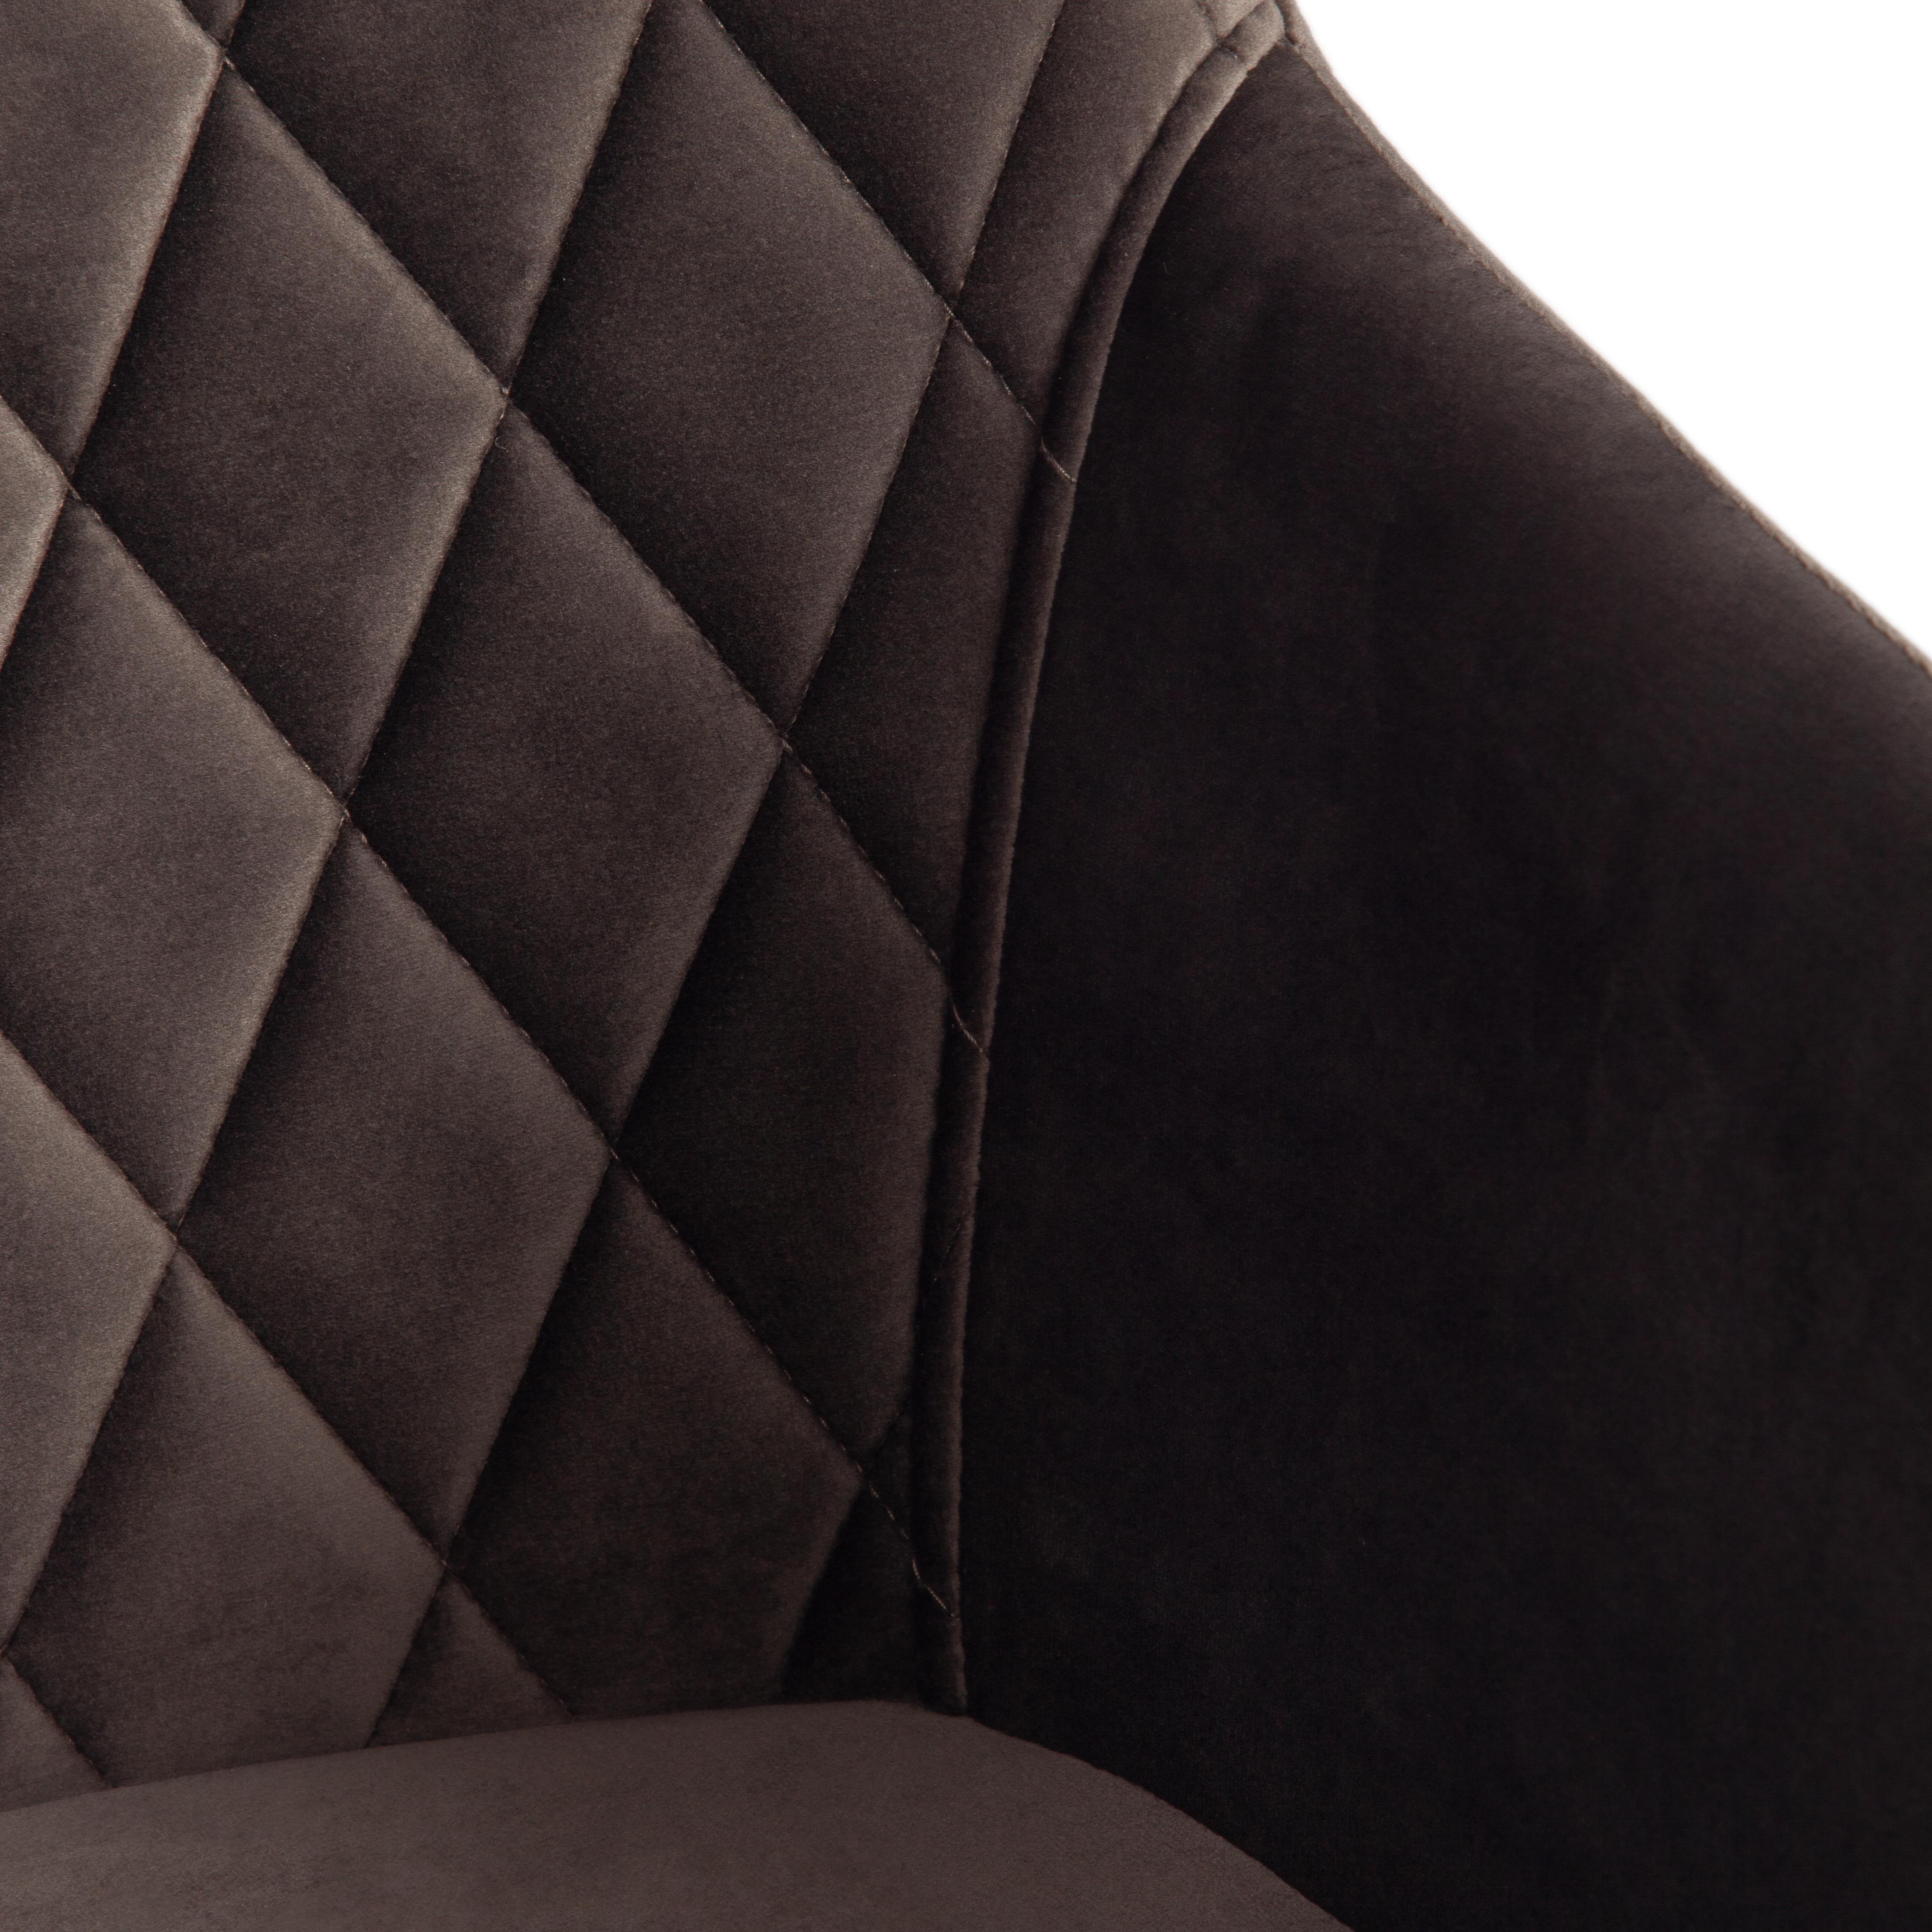 Кресло BREMO (mod. 708) ткань/металл, 58х55х83 см, высота до сиденья 48 см, темно-серый barkhat 14/черный